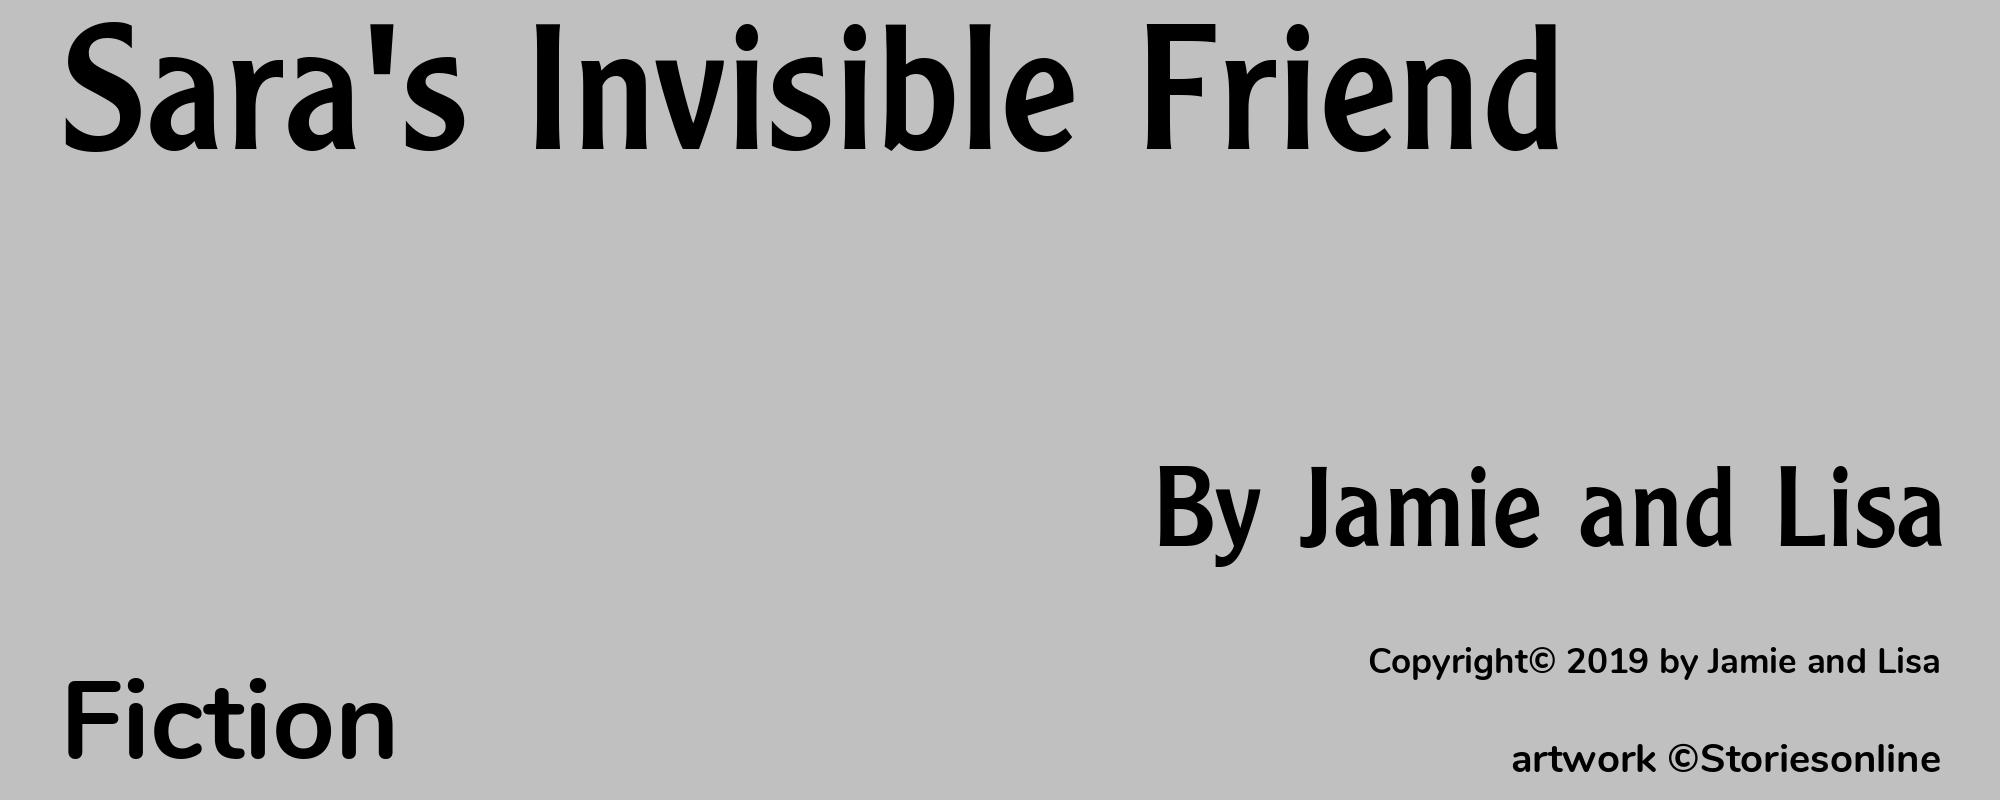 Sara's Invisible Friend - Cover